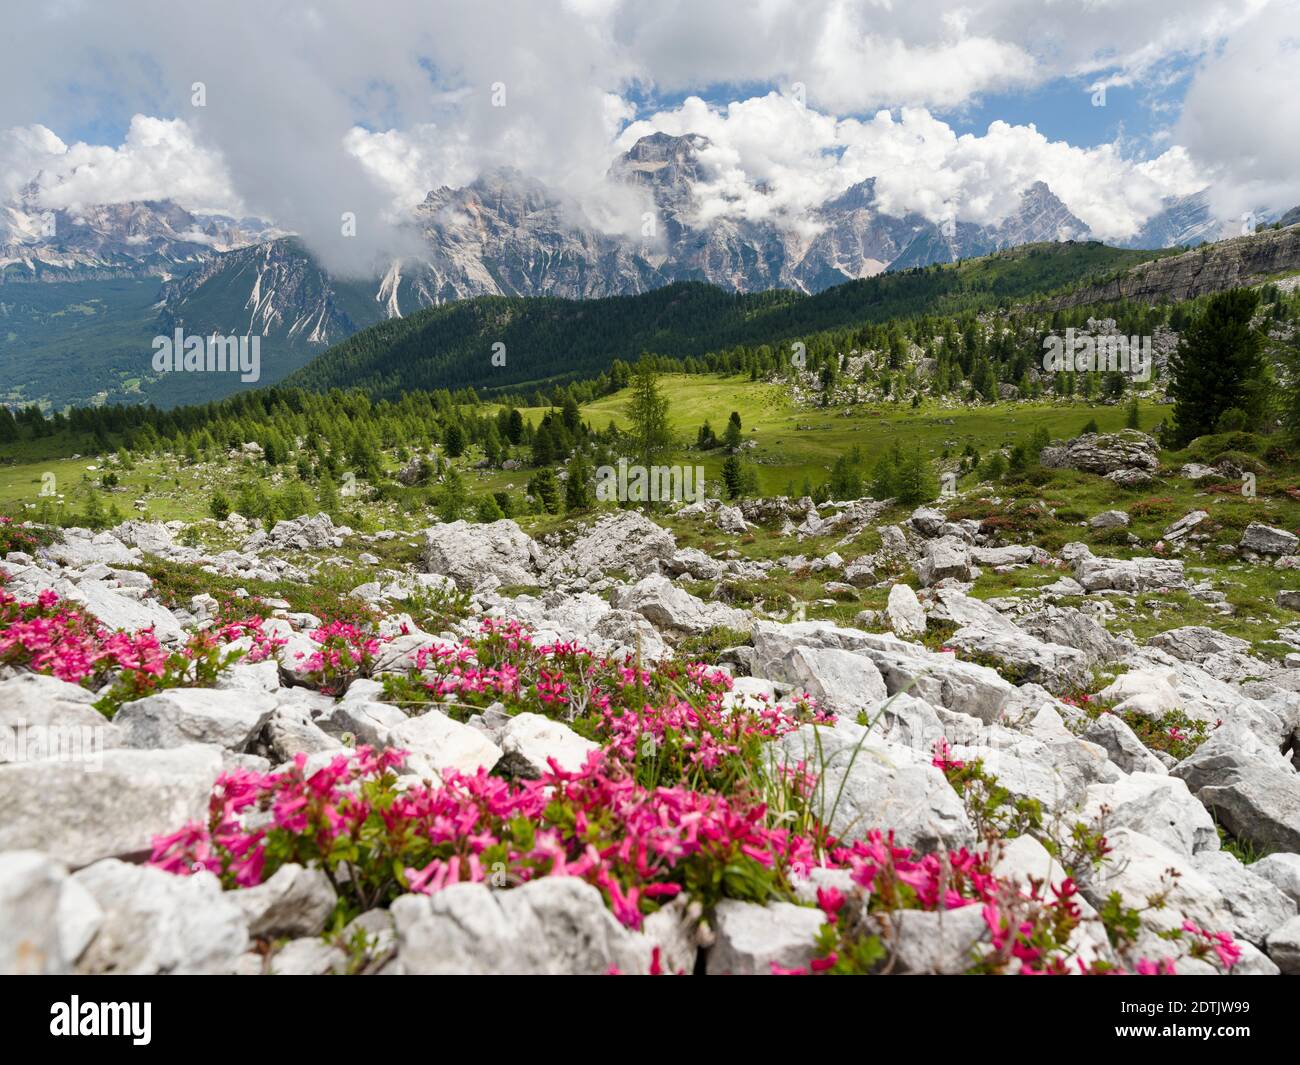 Croda da Lago dans les Dolomites de la Vénétie près de Cortina d'Ampezzo, vue vers Sorapis. Partie du patrimoine mondial de l'UNESCO. Europe, Europe centrale, Banque D'Images